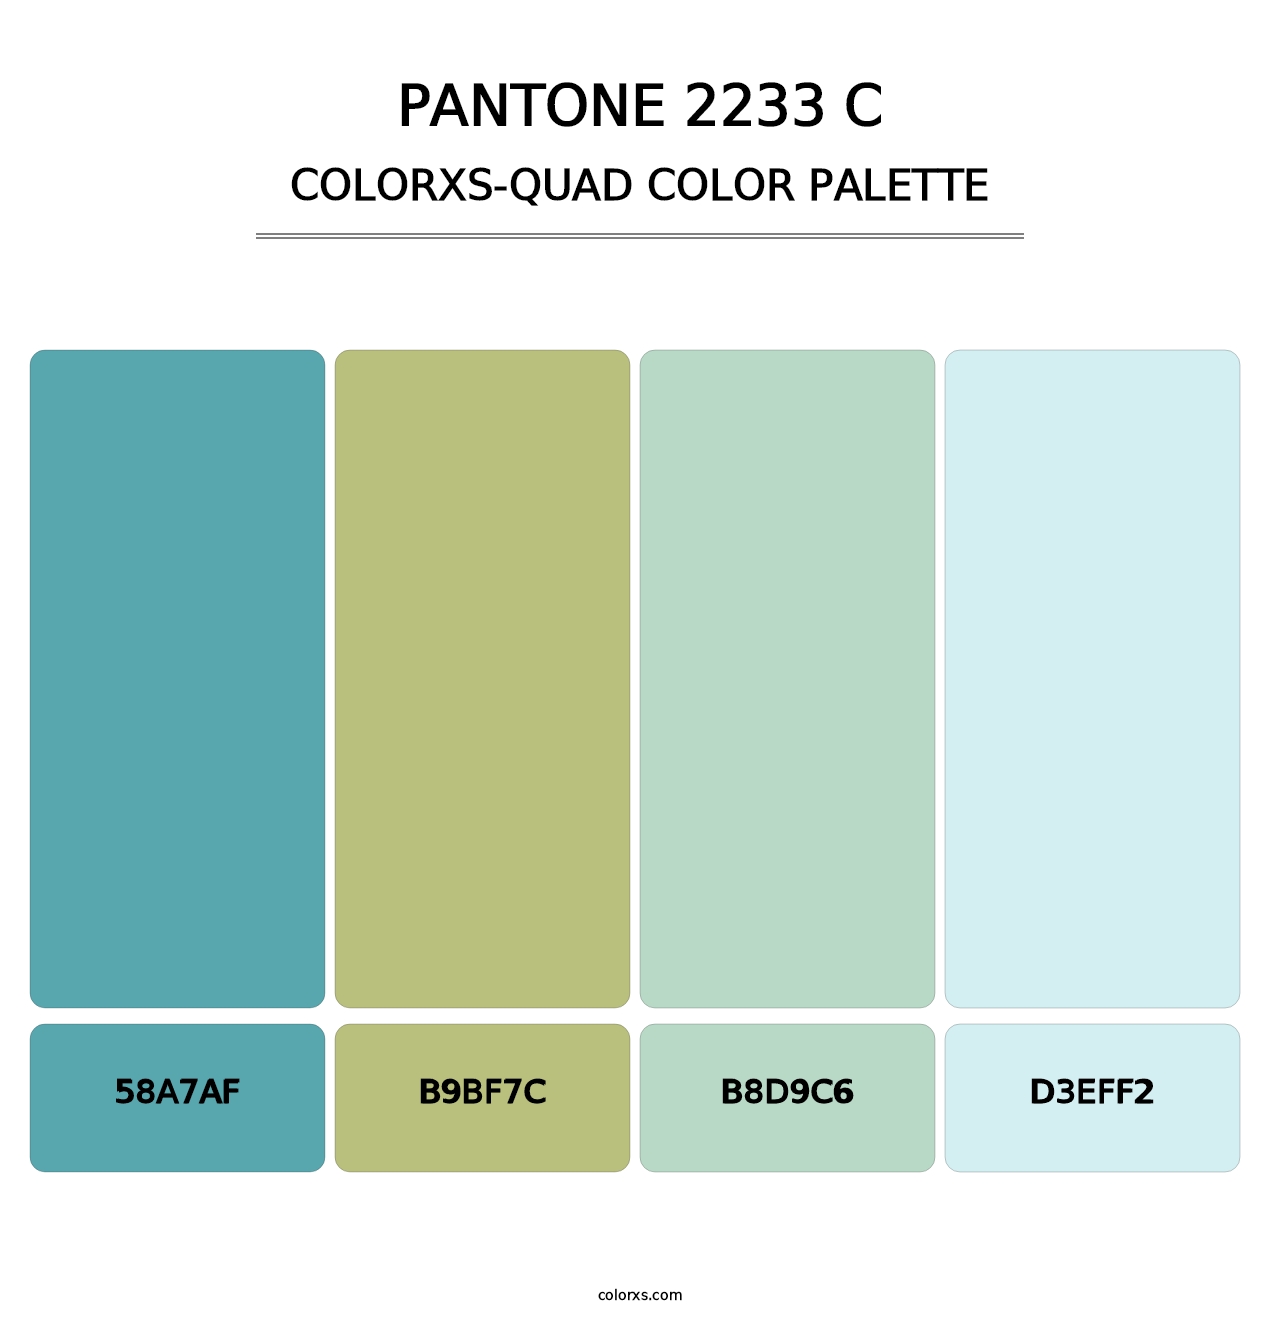 PANTONE 2233 C - Colorxs Quad Palette